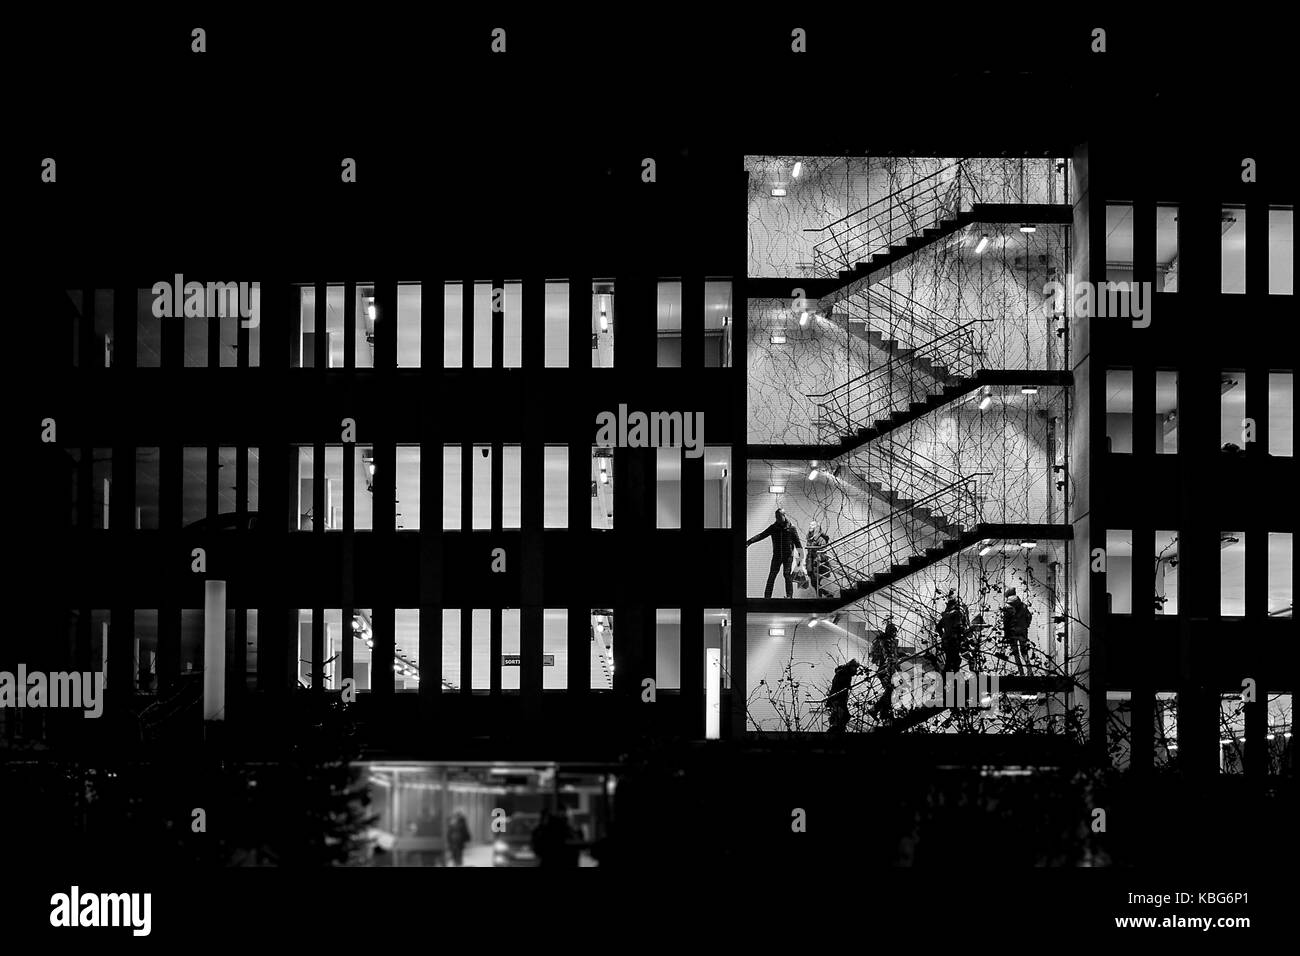 Bild der Parkplatz Gebäude bei Nacht zeigen Silhouetten der Menschen auf und ab gehen die Levels. Türen öffnen, die auf der Suche für ihre Autos. Stockfoto